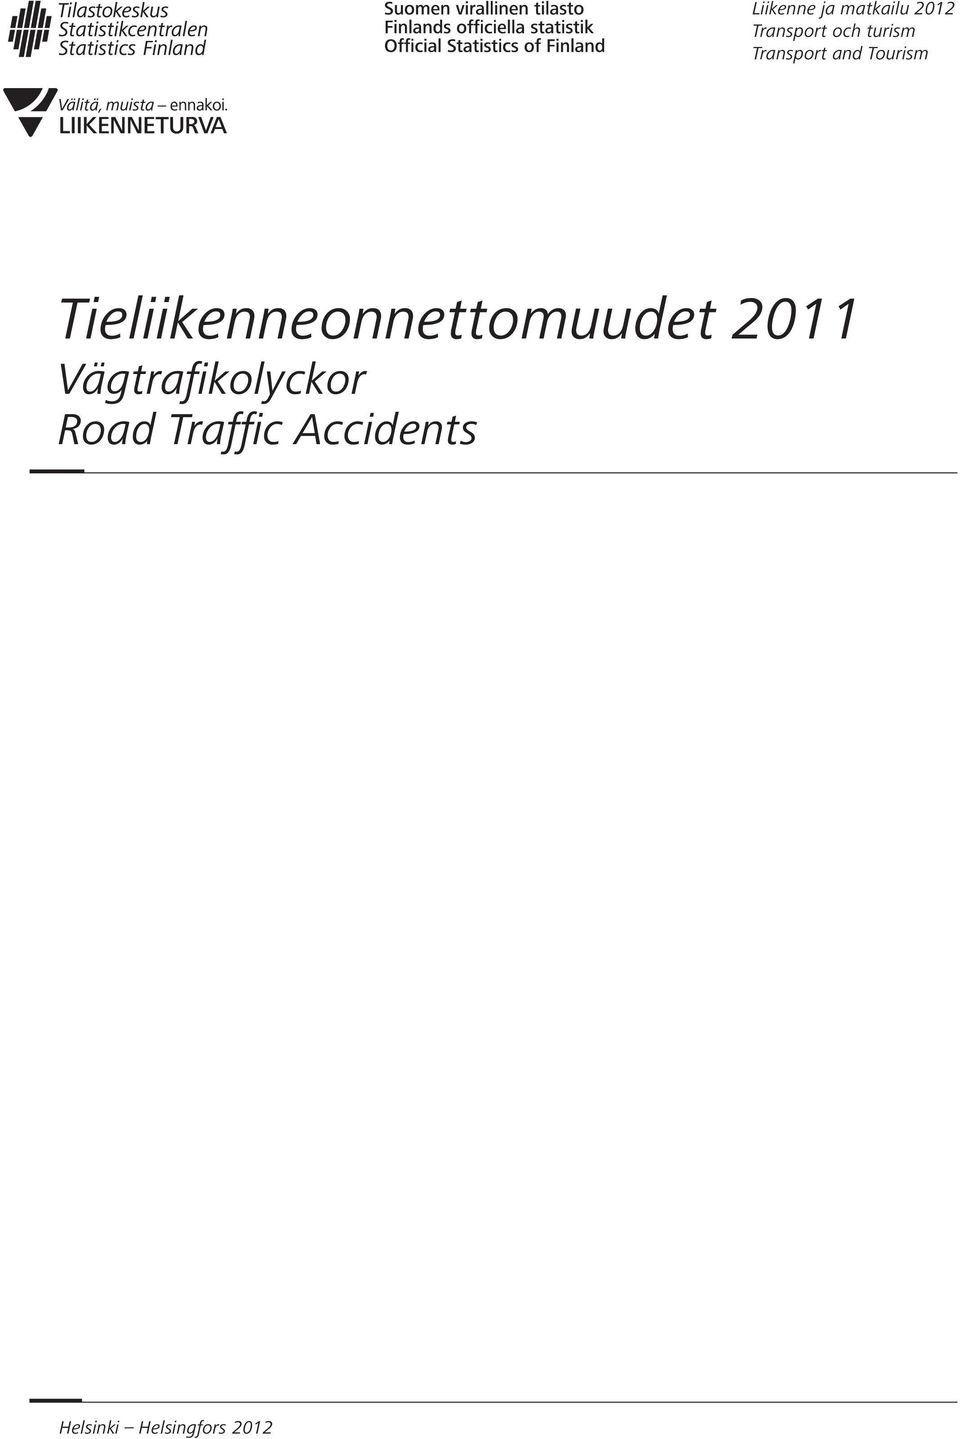 Tieliikenneonnettomuudet 2011